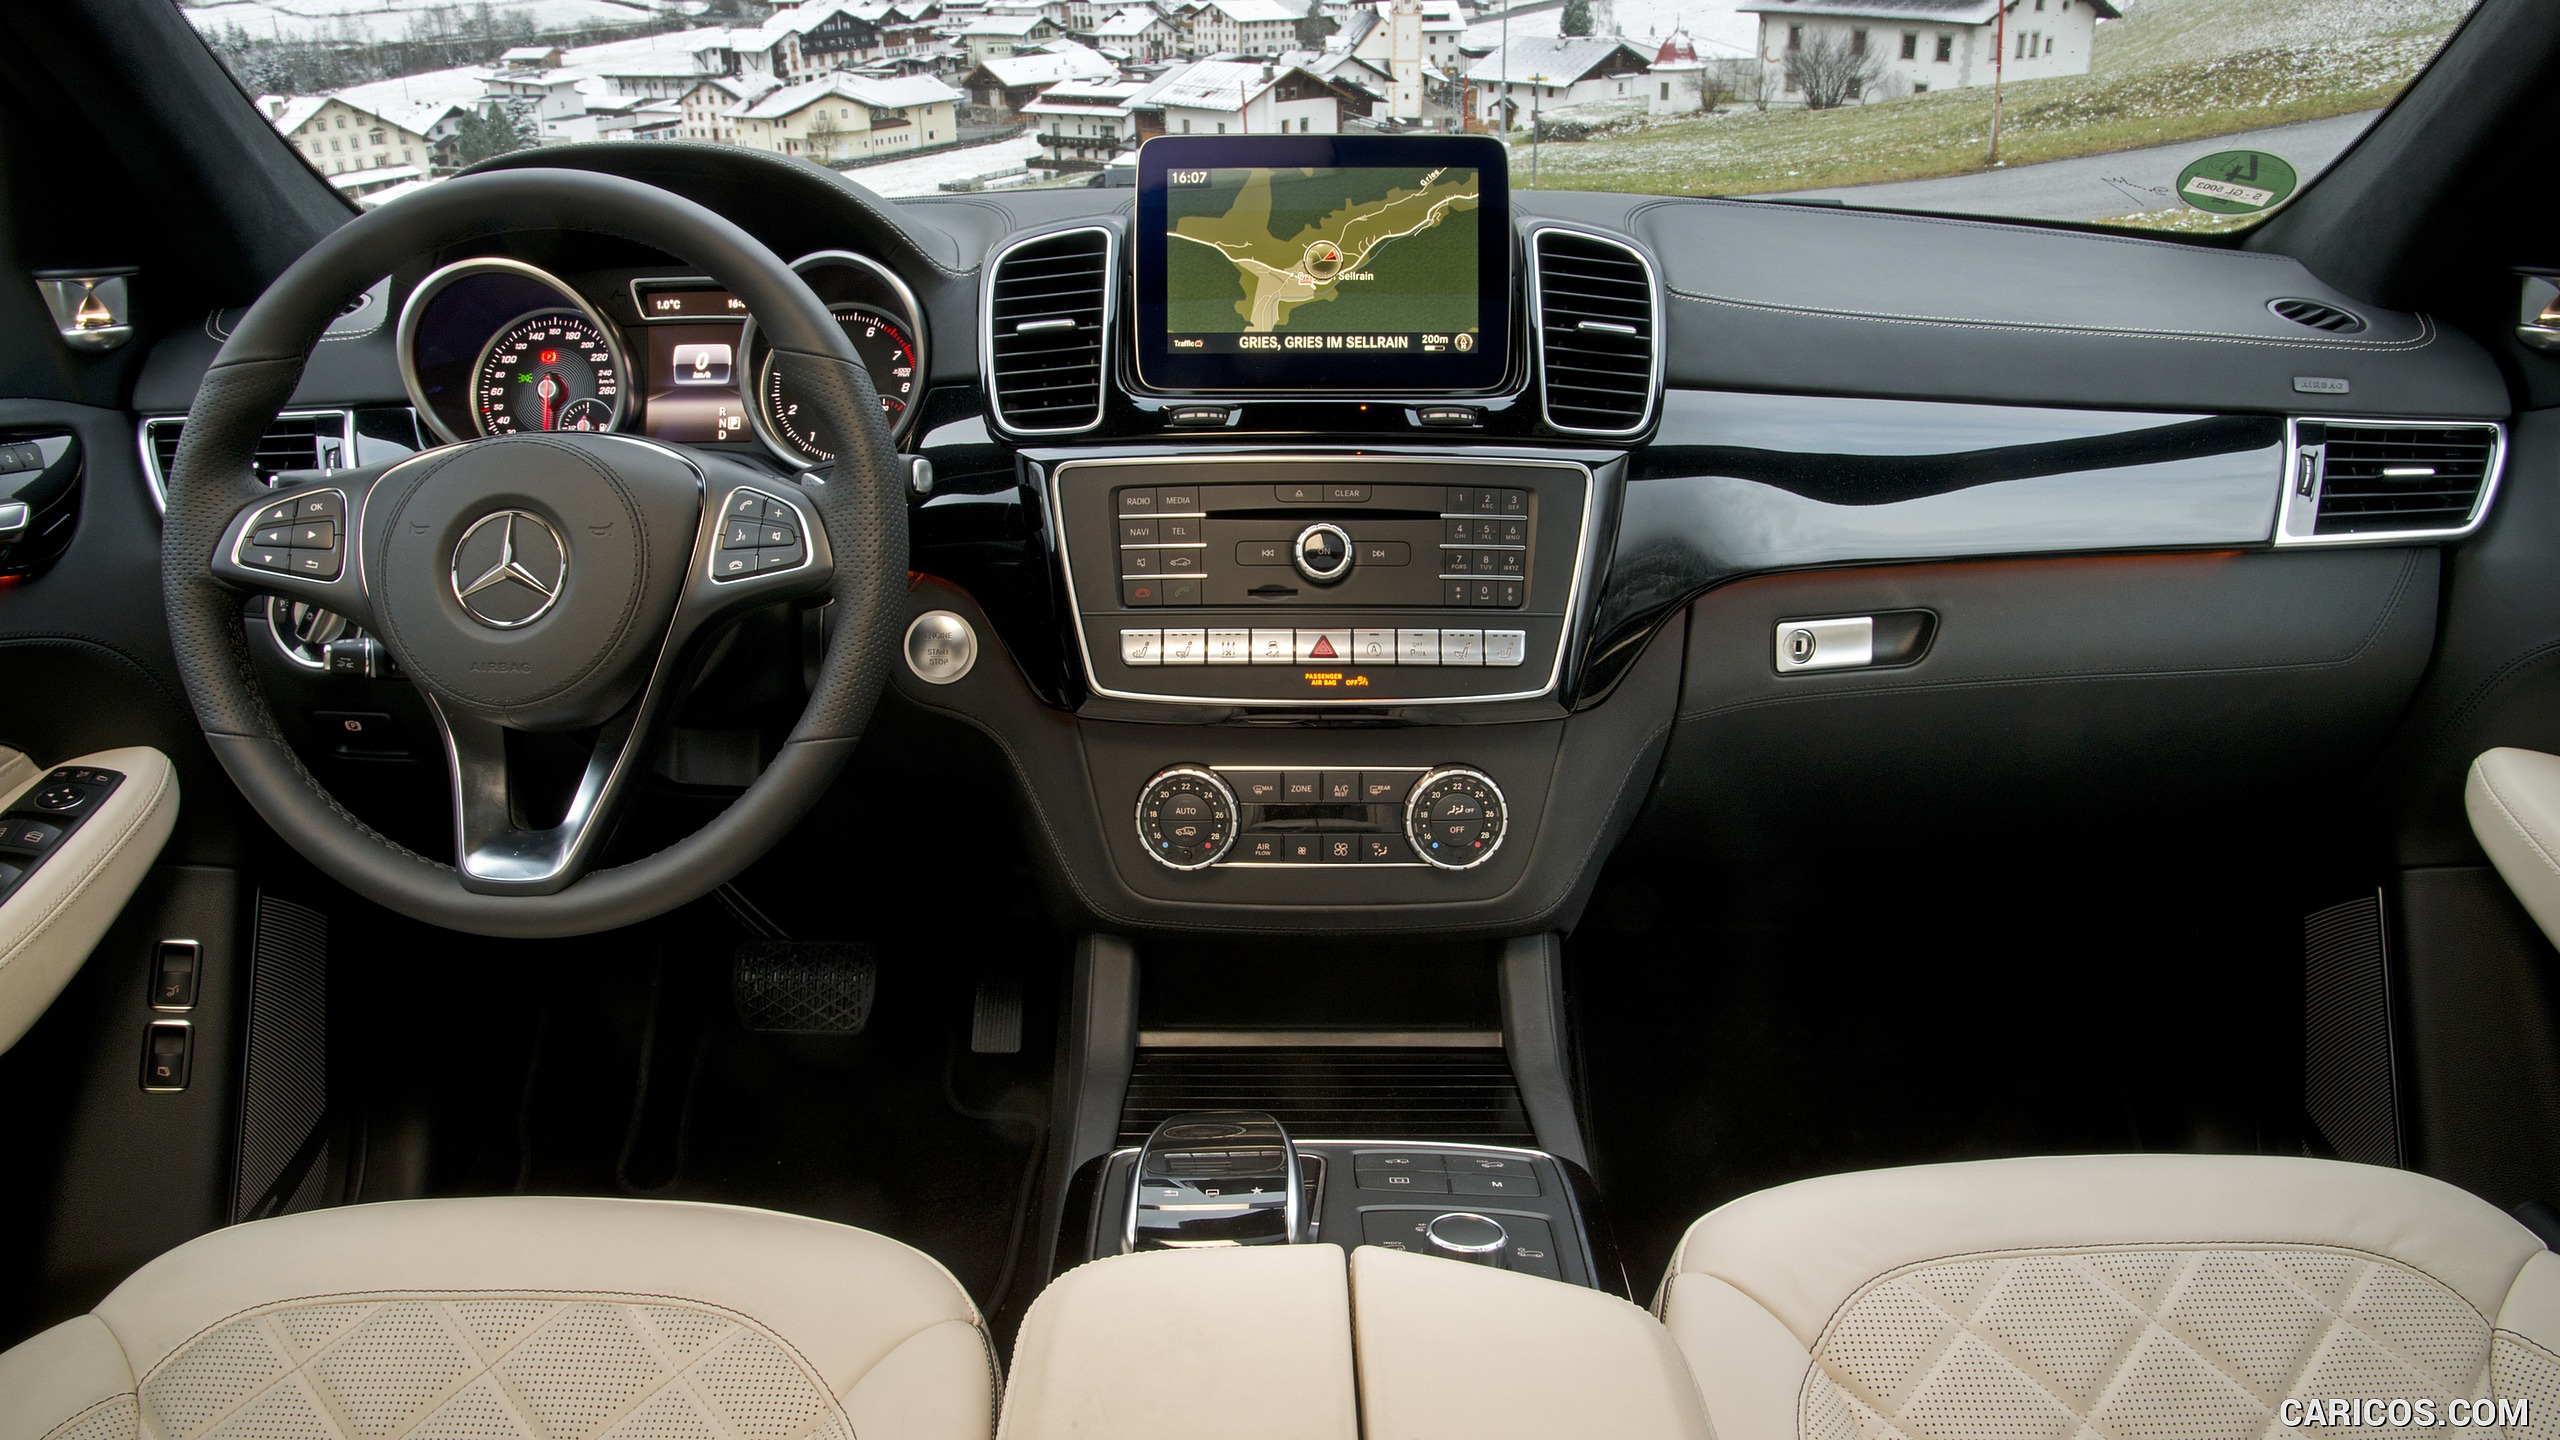 2017 Mercedes-Benz GLS 400 4MATIC - Interior, Cockpit, #64 of 255